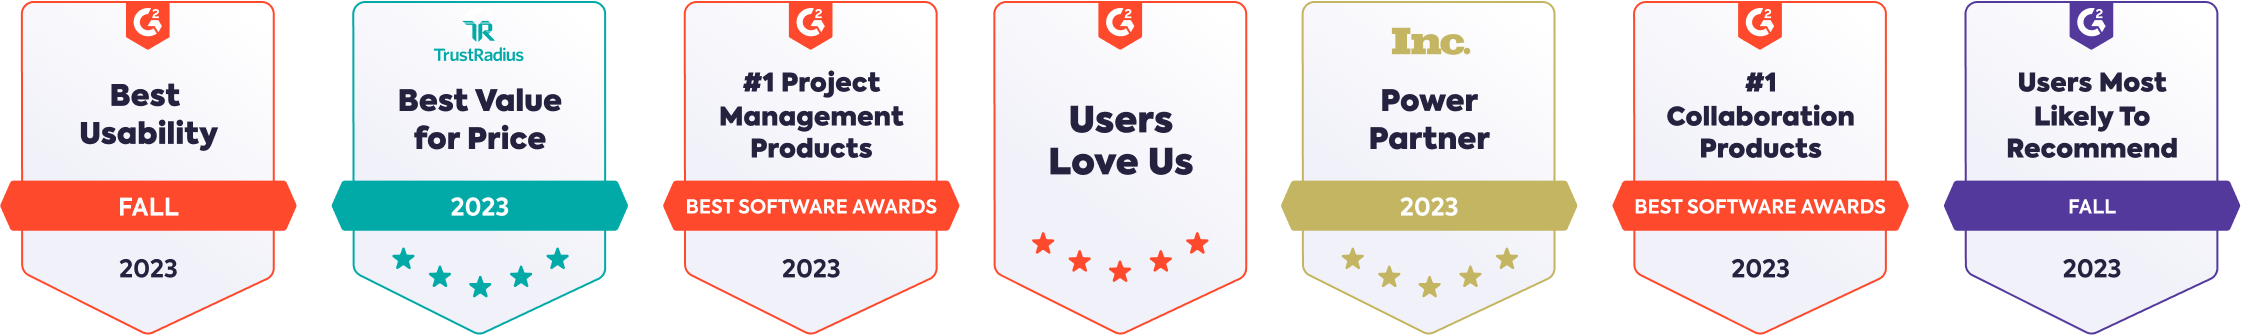 Users Love Us (6)